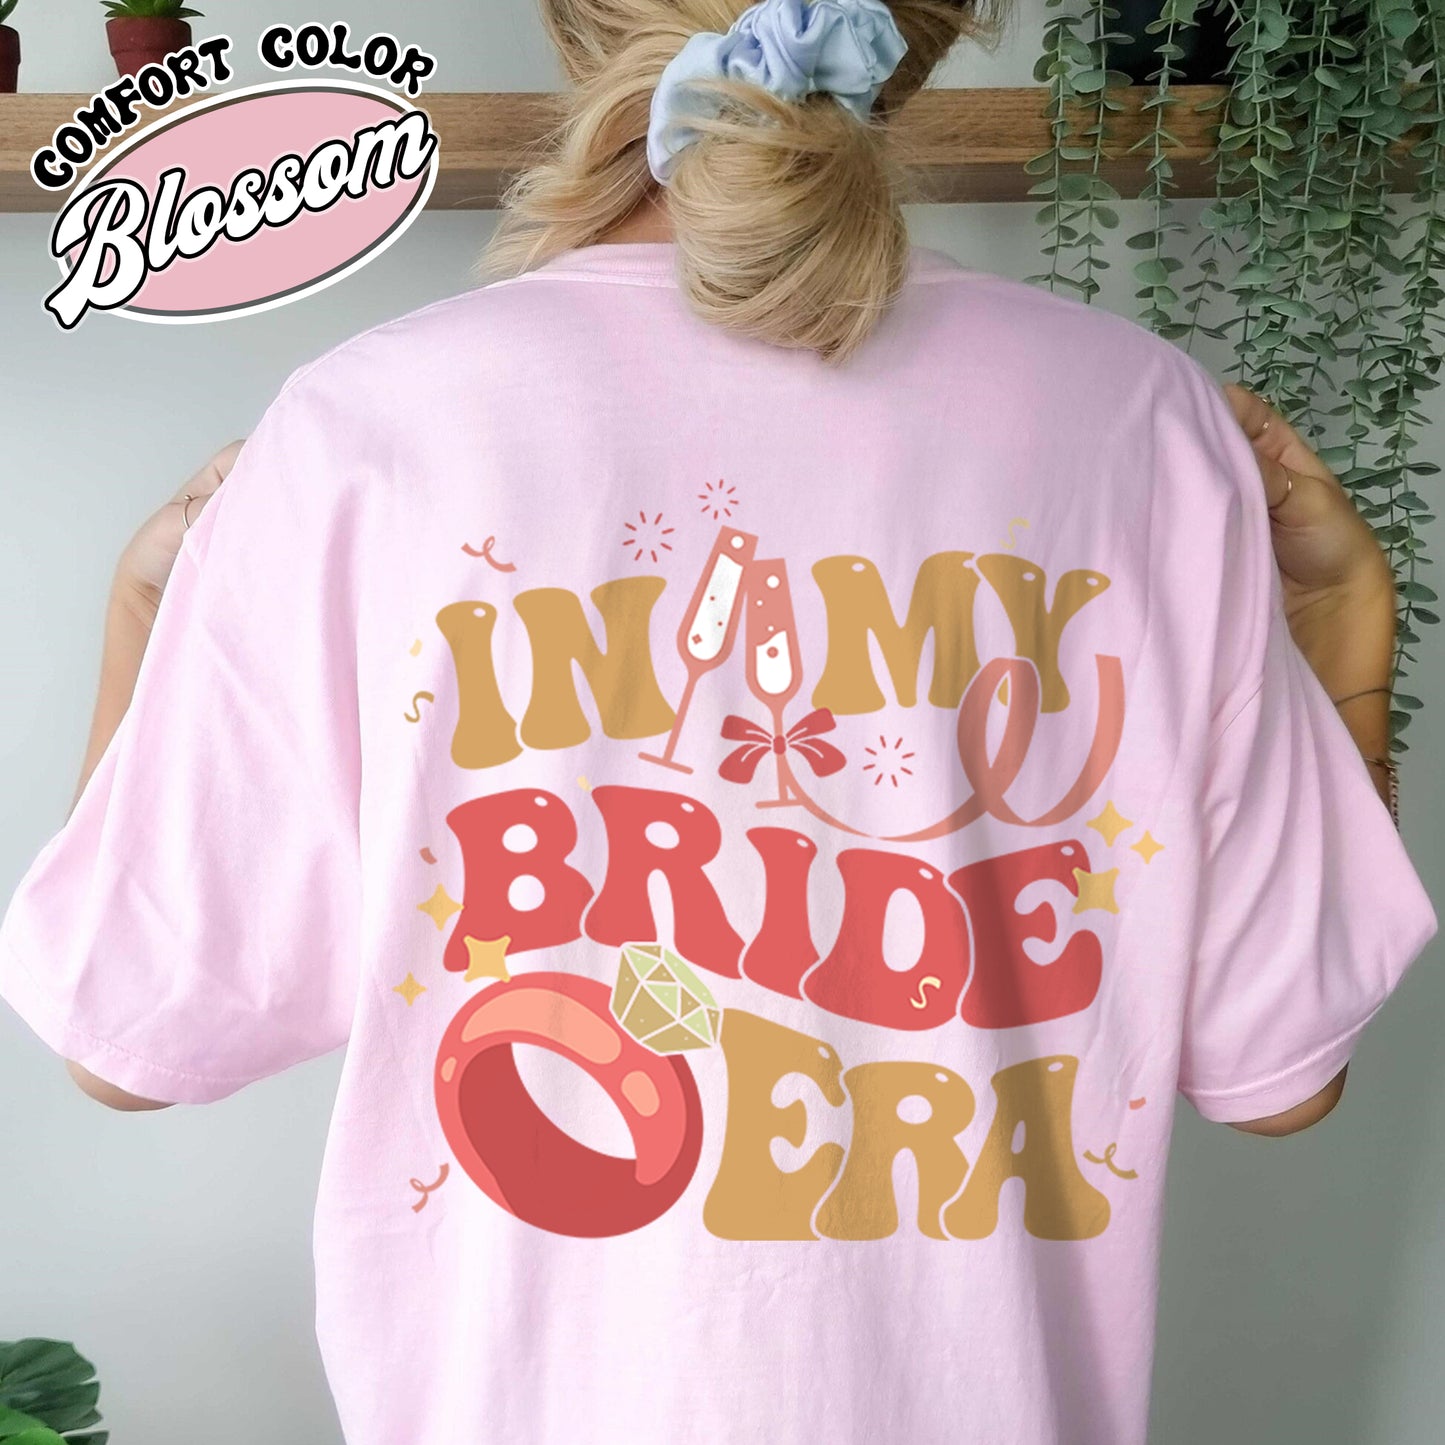 Trendy Bride Comfort Color Shirt, Bride Shirt, Bride Era , Bride Era , Babe Era Shirt, Bachelorette Shirt, Bachelorette Party